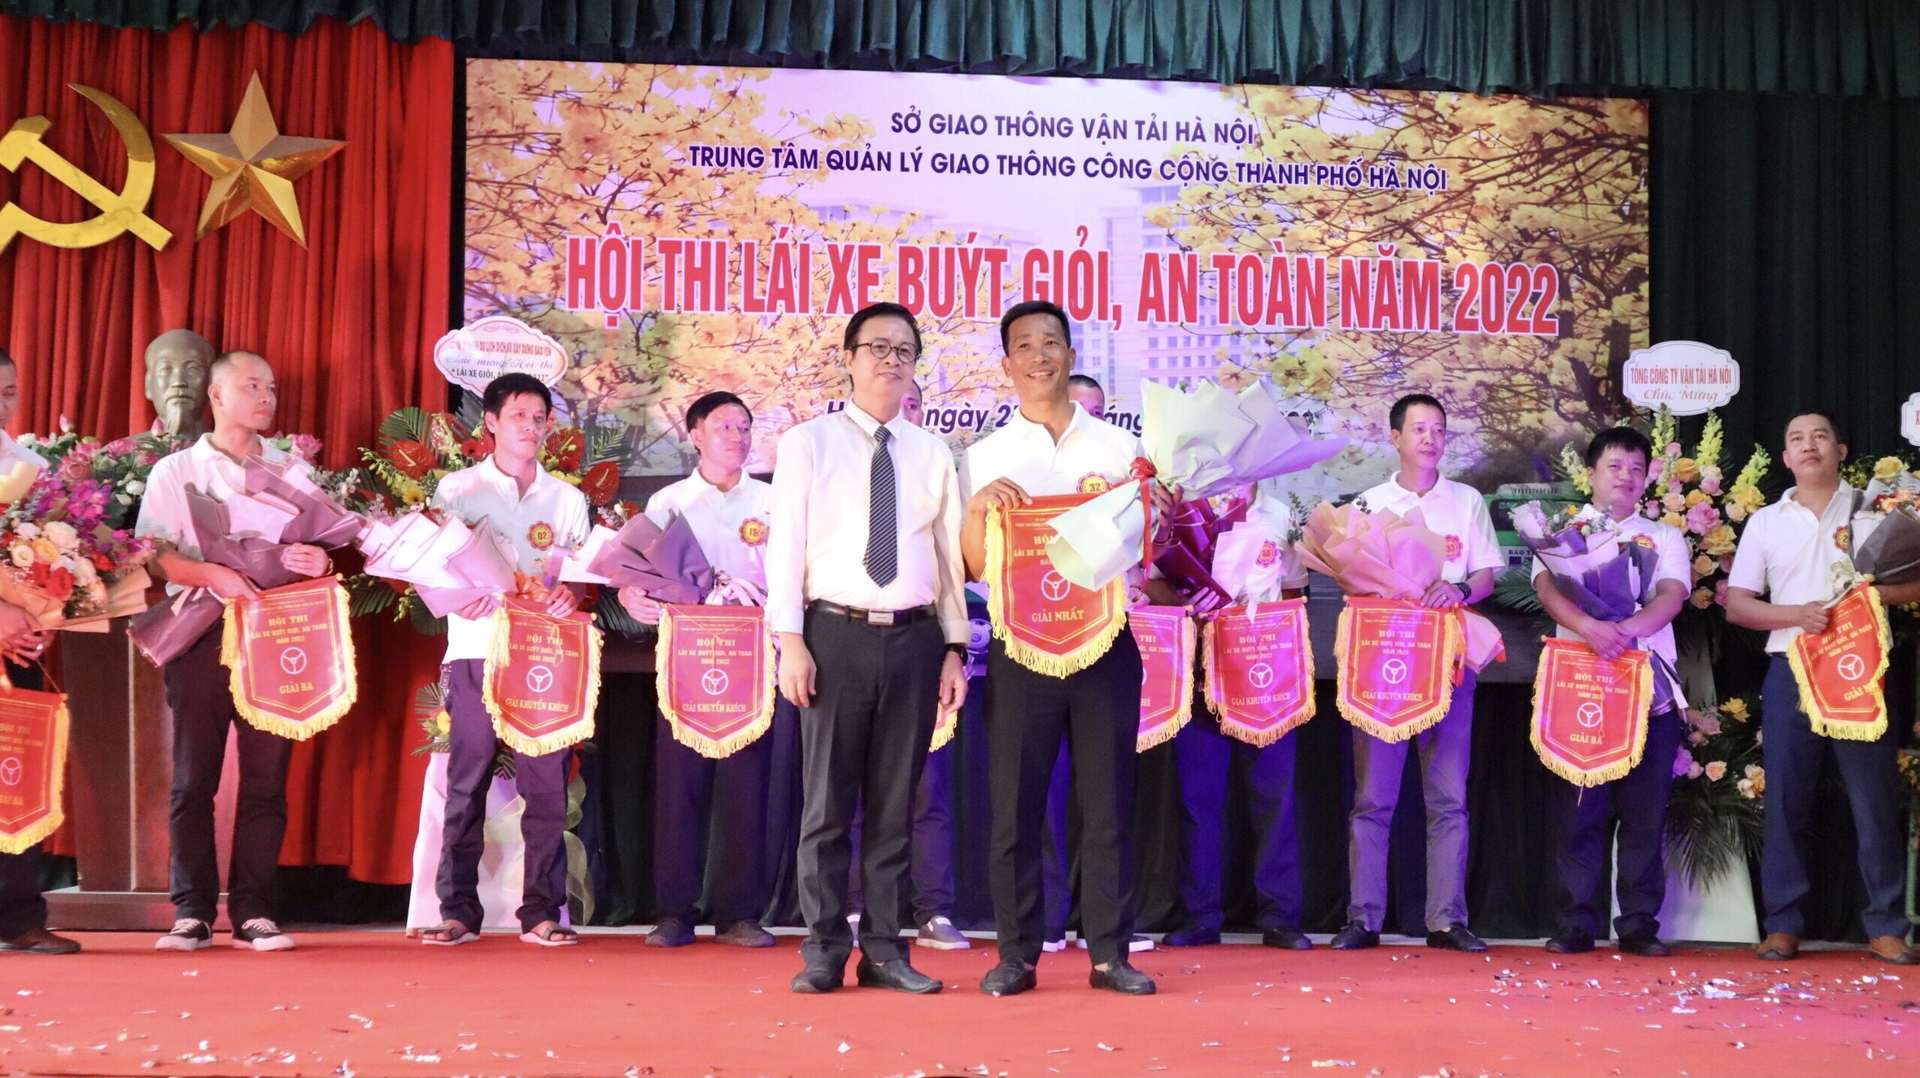 Tài xế Đỗ Thanh Tân tại khu deport của Vinbus giành giải nhất Hội thi lái xe giỏi an toàn của Hà Nội. Ảnh: Vinbus.vn